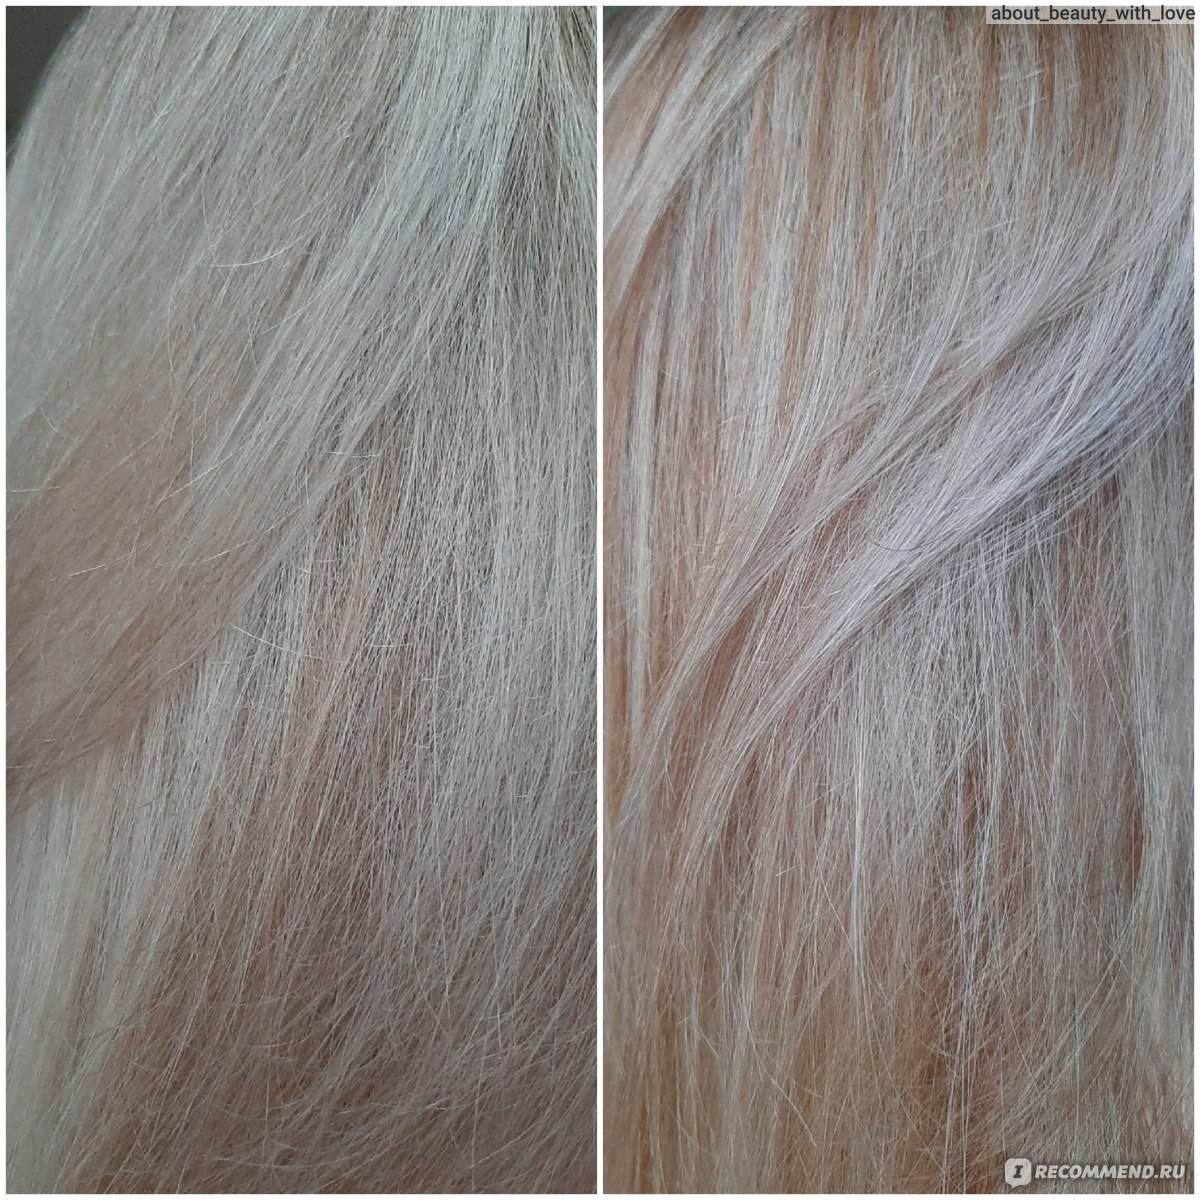 жемчужный цвет волос фото эстель